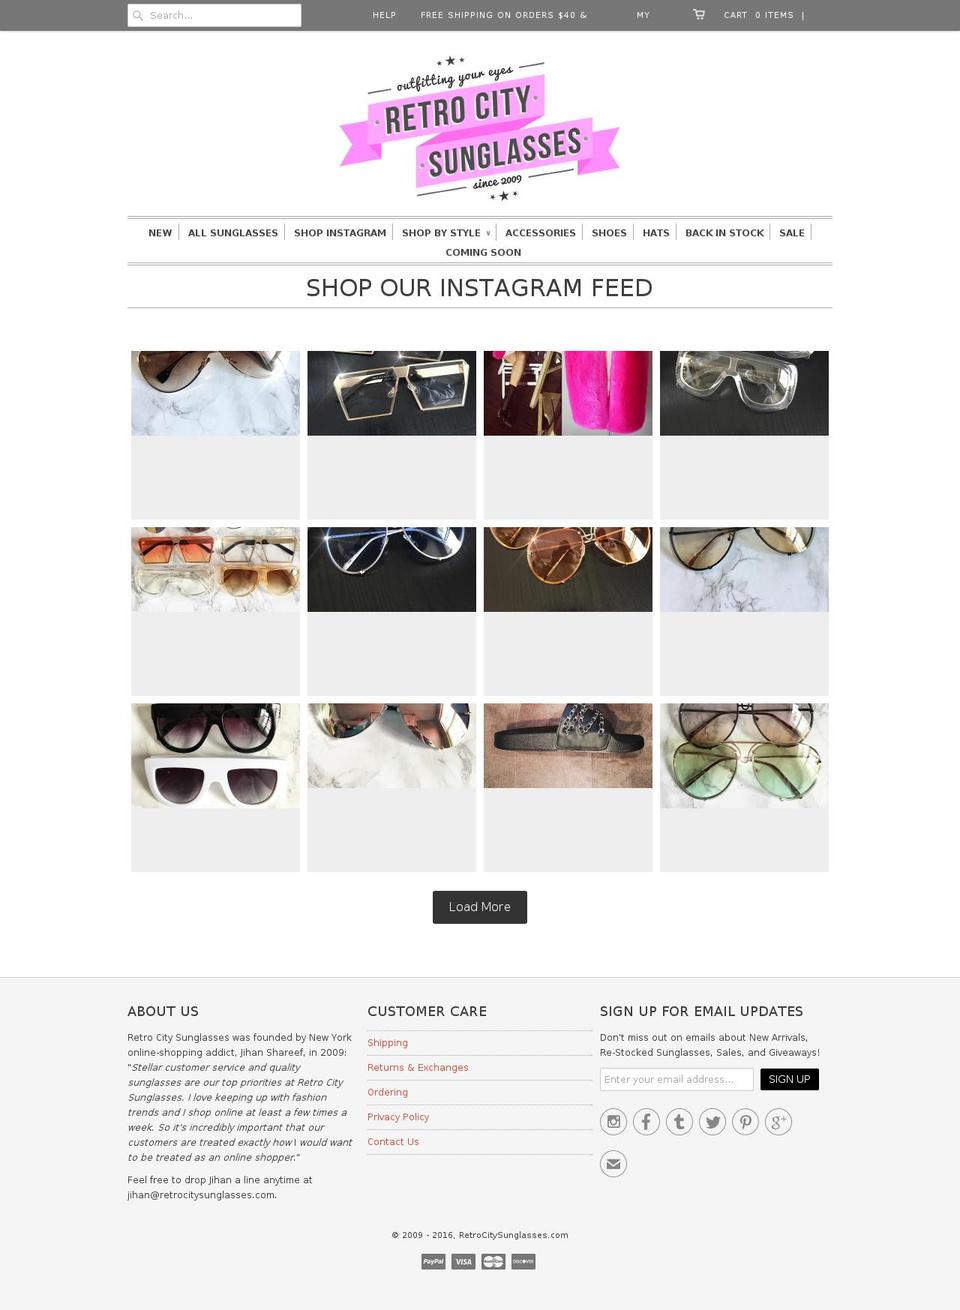 retrocitysunglasses.com shopify website screenshot